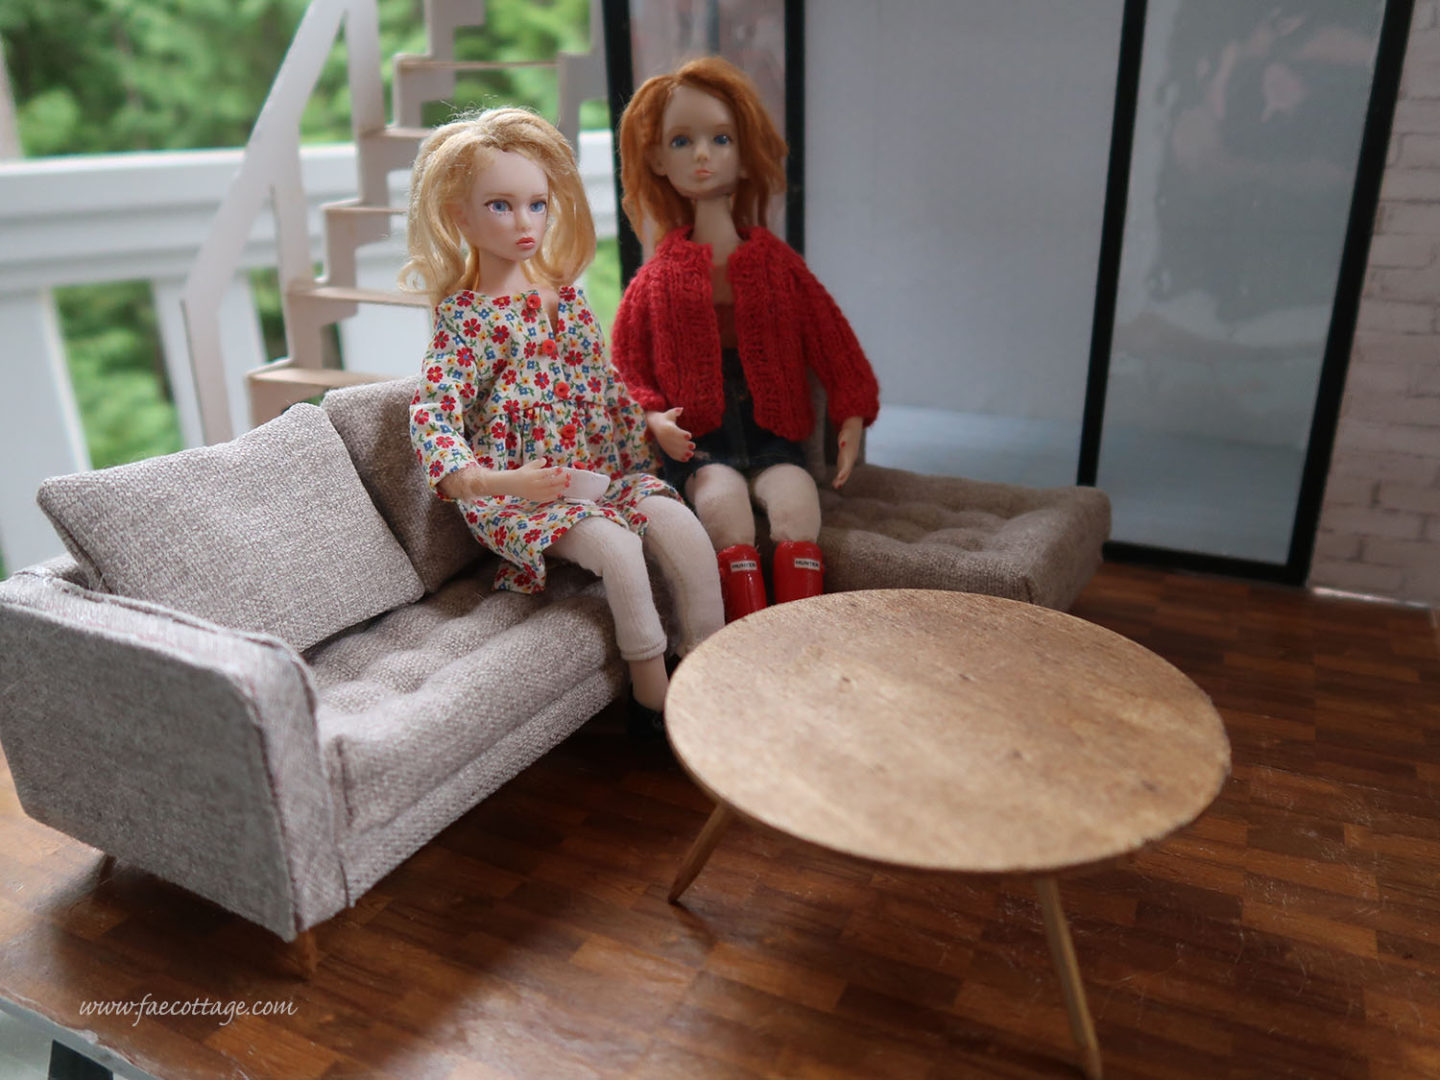 Two polymer clay dolls in my dollhouse